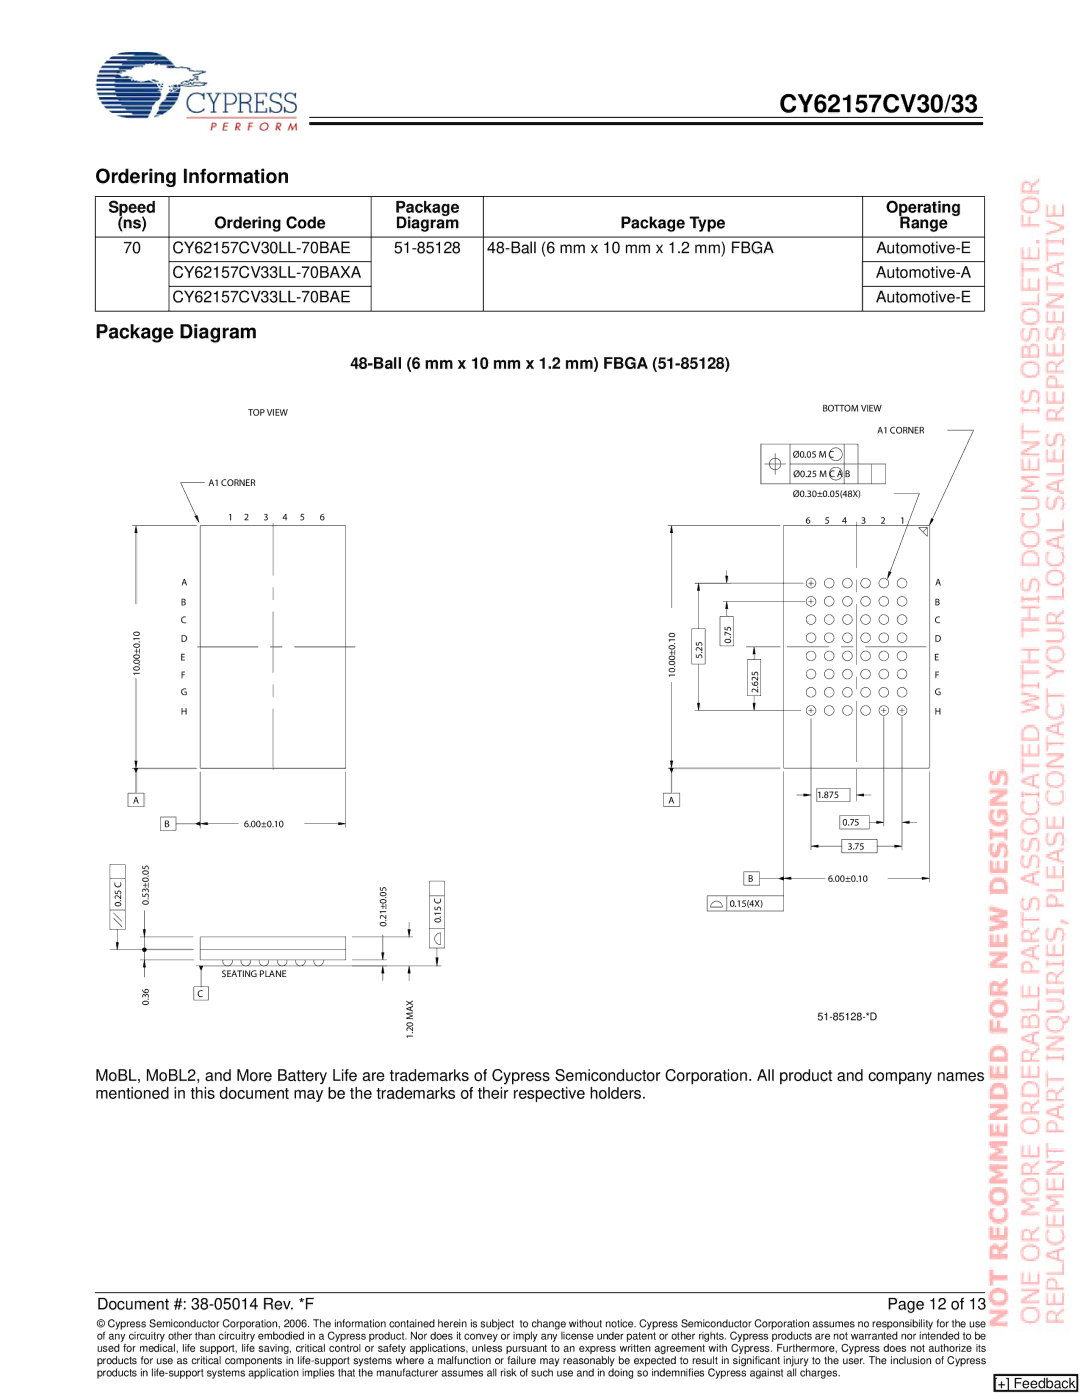 Cypress CY62157CV30, CY62157CV33 manual Ordering Information, Package Diagram, Ball 6 mm x 10 mm x 1.2 mm Fbga 